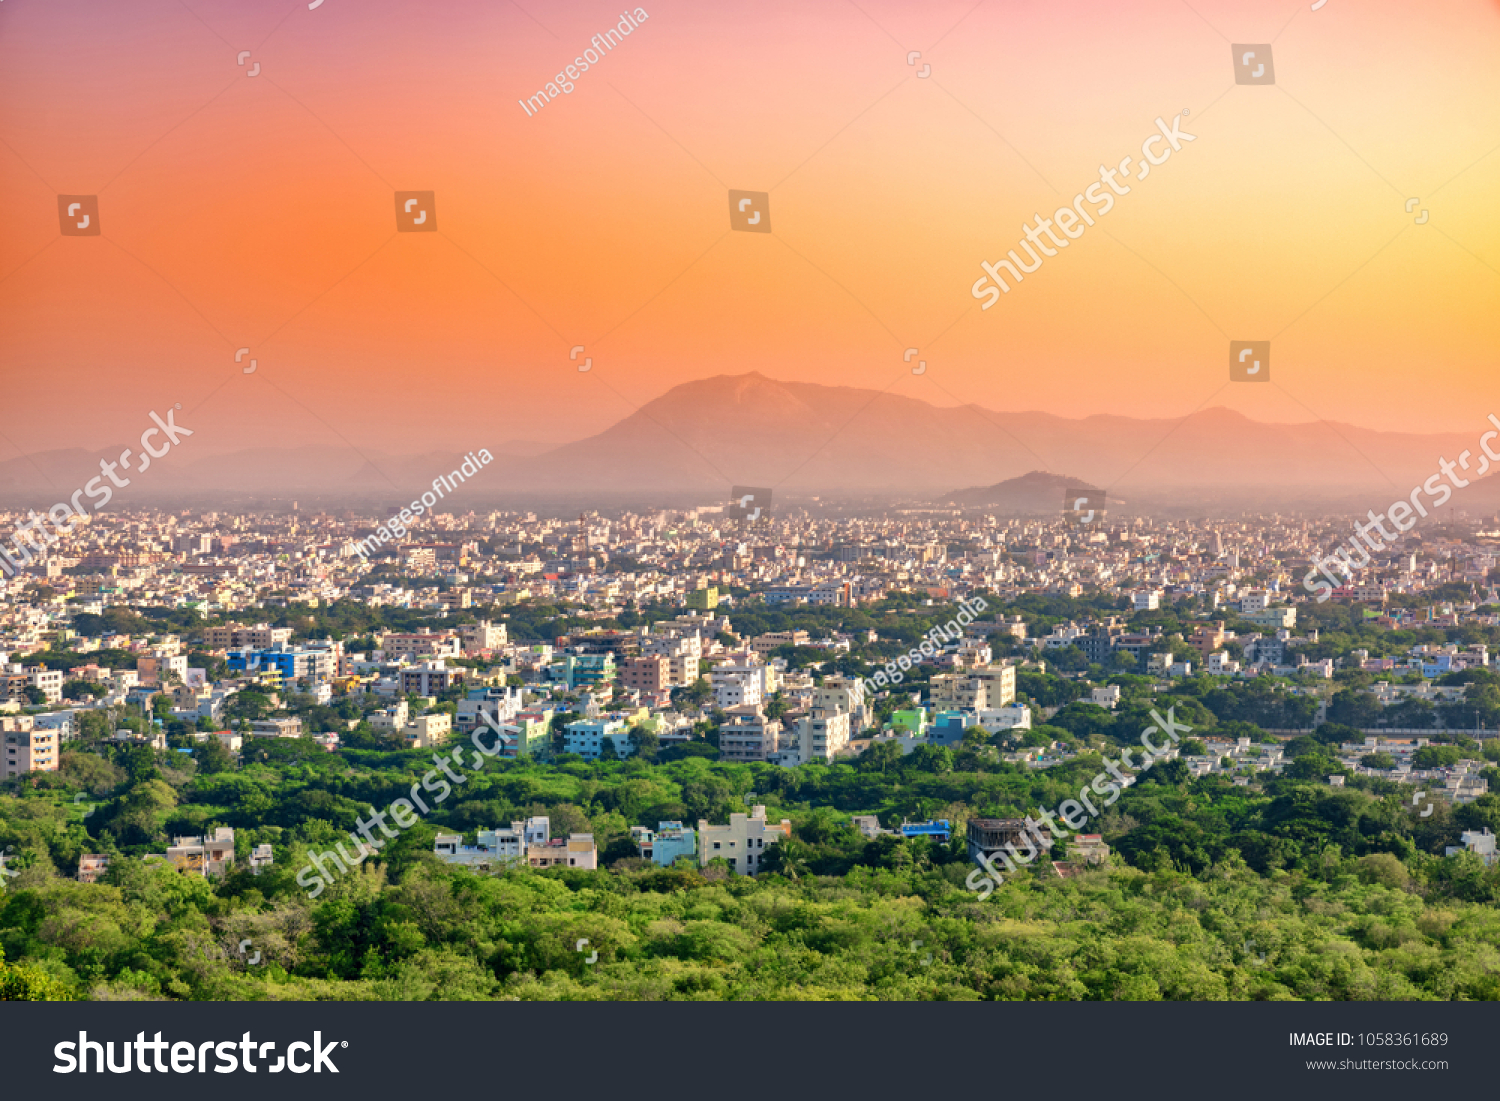 Aerial view of Tirupati city in South India, Andhra Pradesh. India. #1058361689